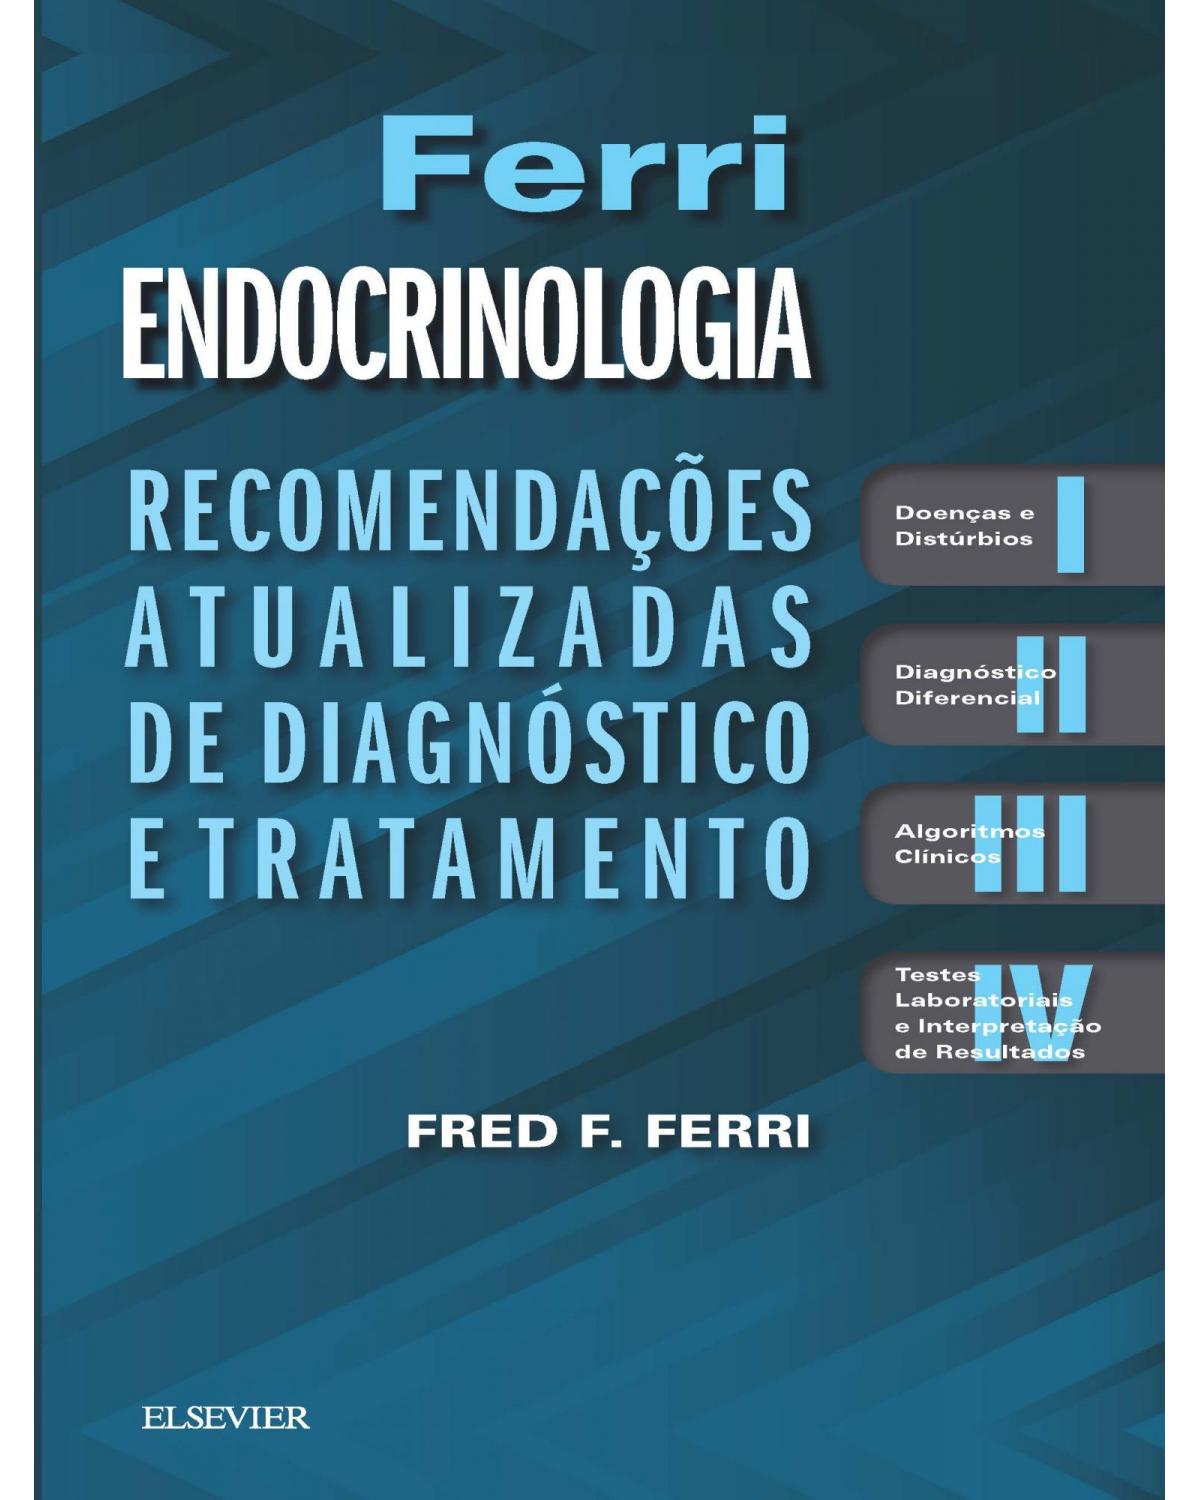 Ferri - Endocrinologia - Recomendações atualizadas e diagnóstico e tratamento - 1ª Edição | 2019